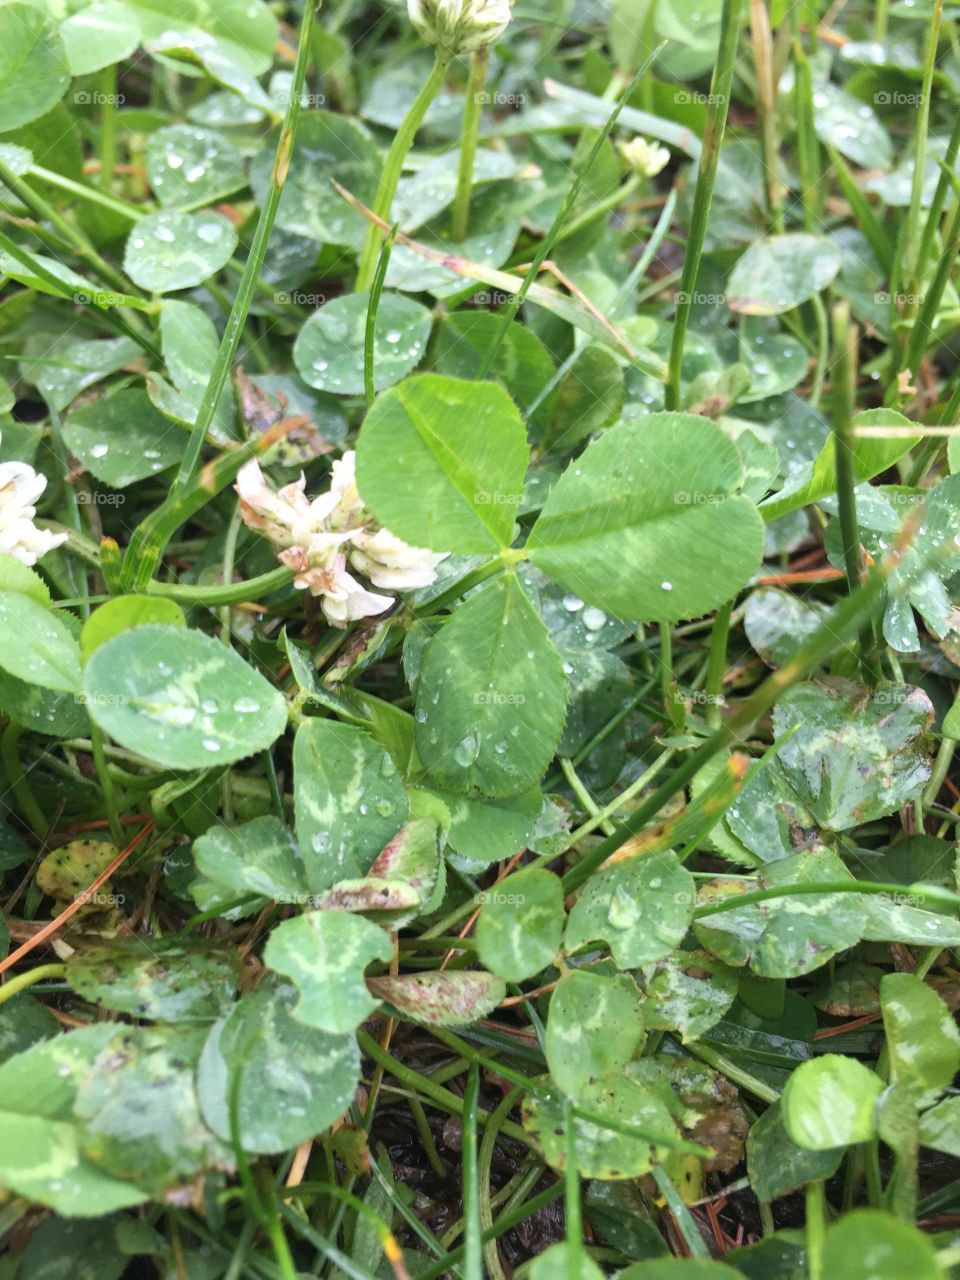 Clover after rain. Wet clover in the grass